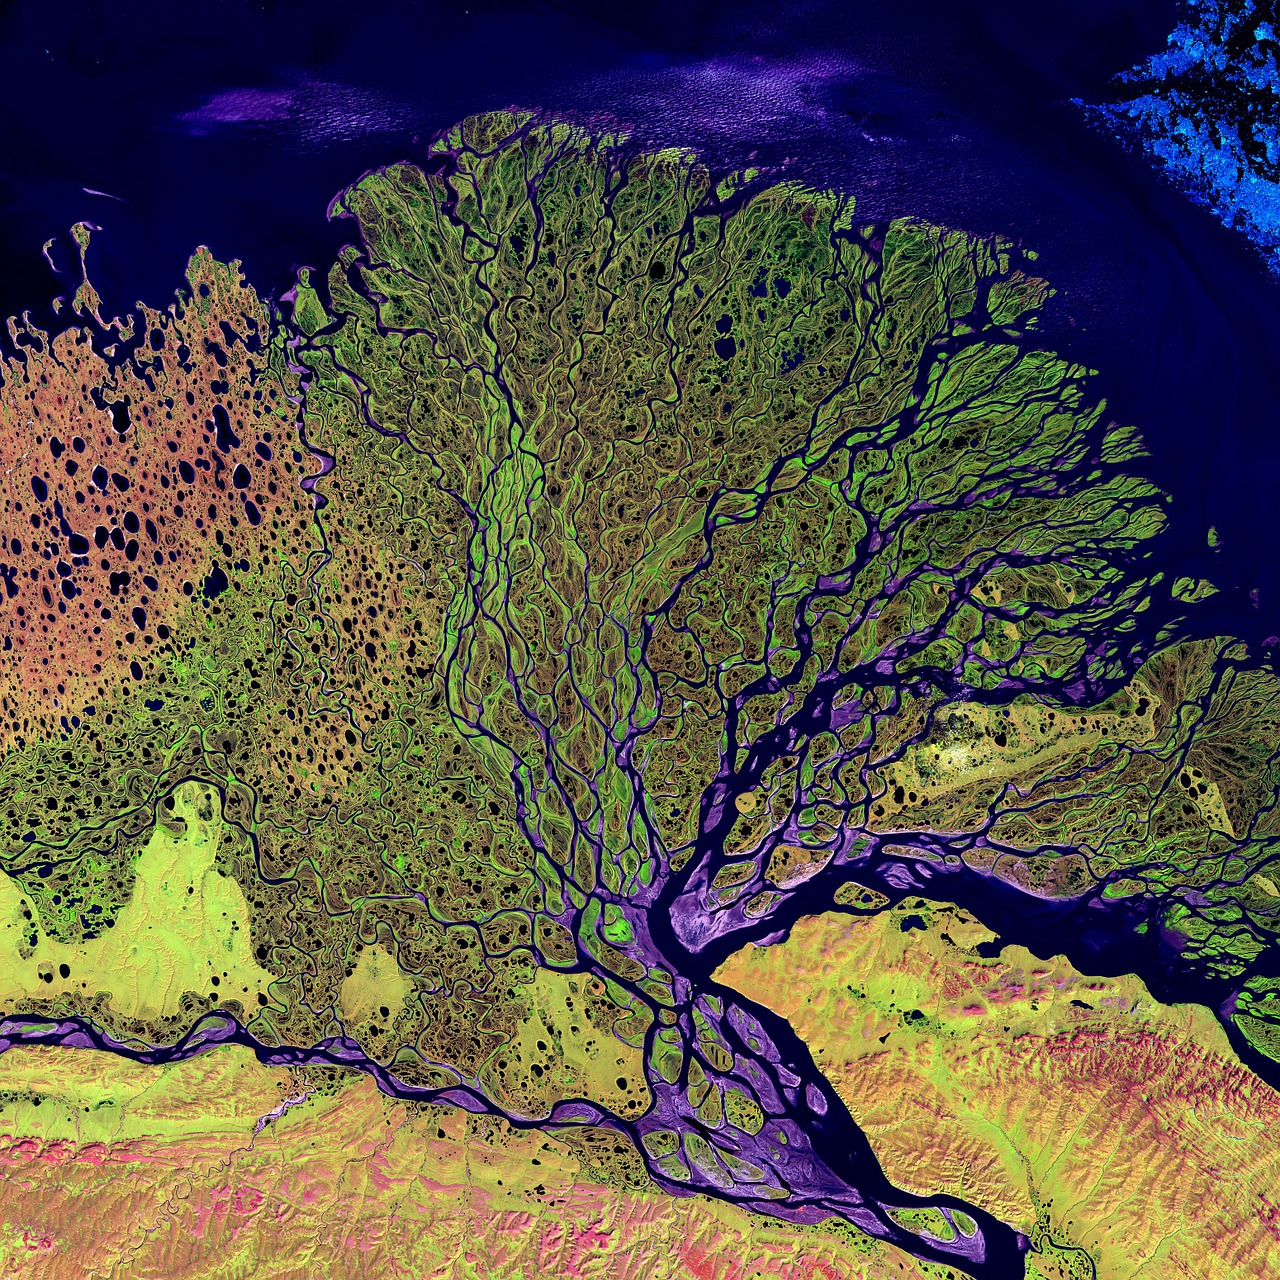 Oro Vaizdas, Palydovinis Vaizdas, Palydovinė Nuotrauka, Upės Delta, Lena, Upė, Dabartinis, Siberija, Rusija, Asija